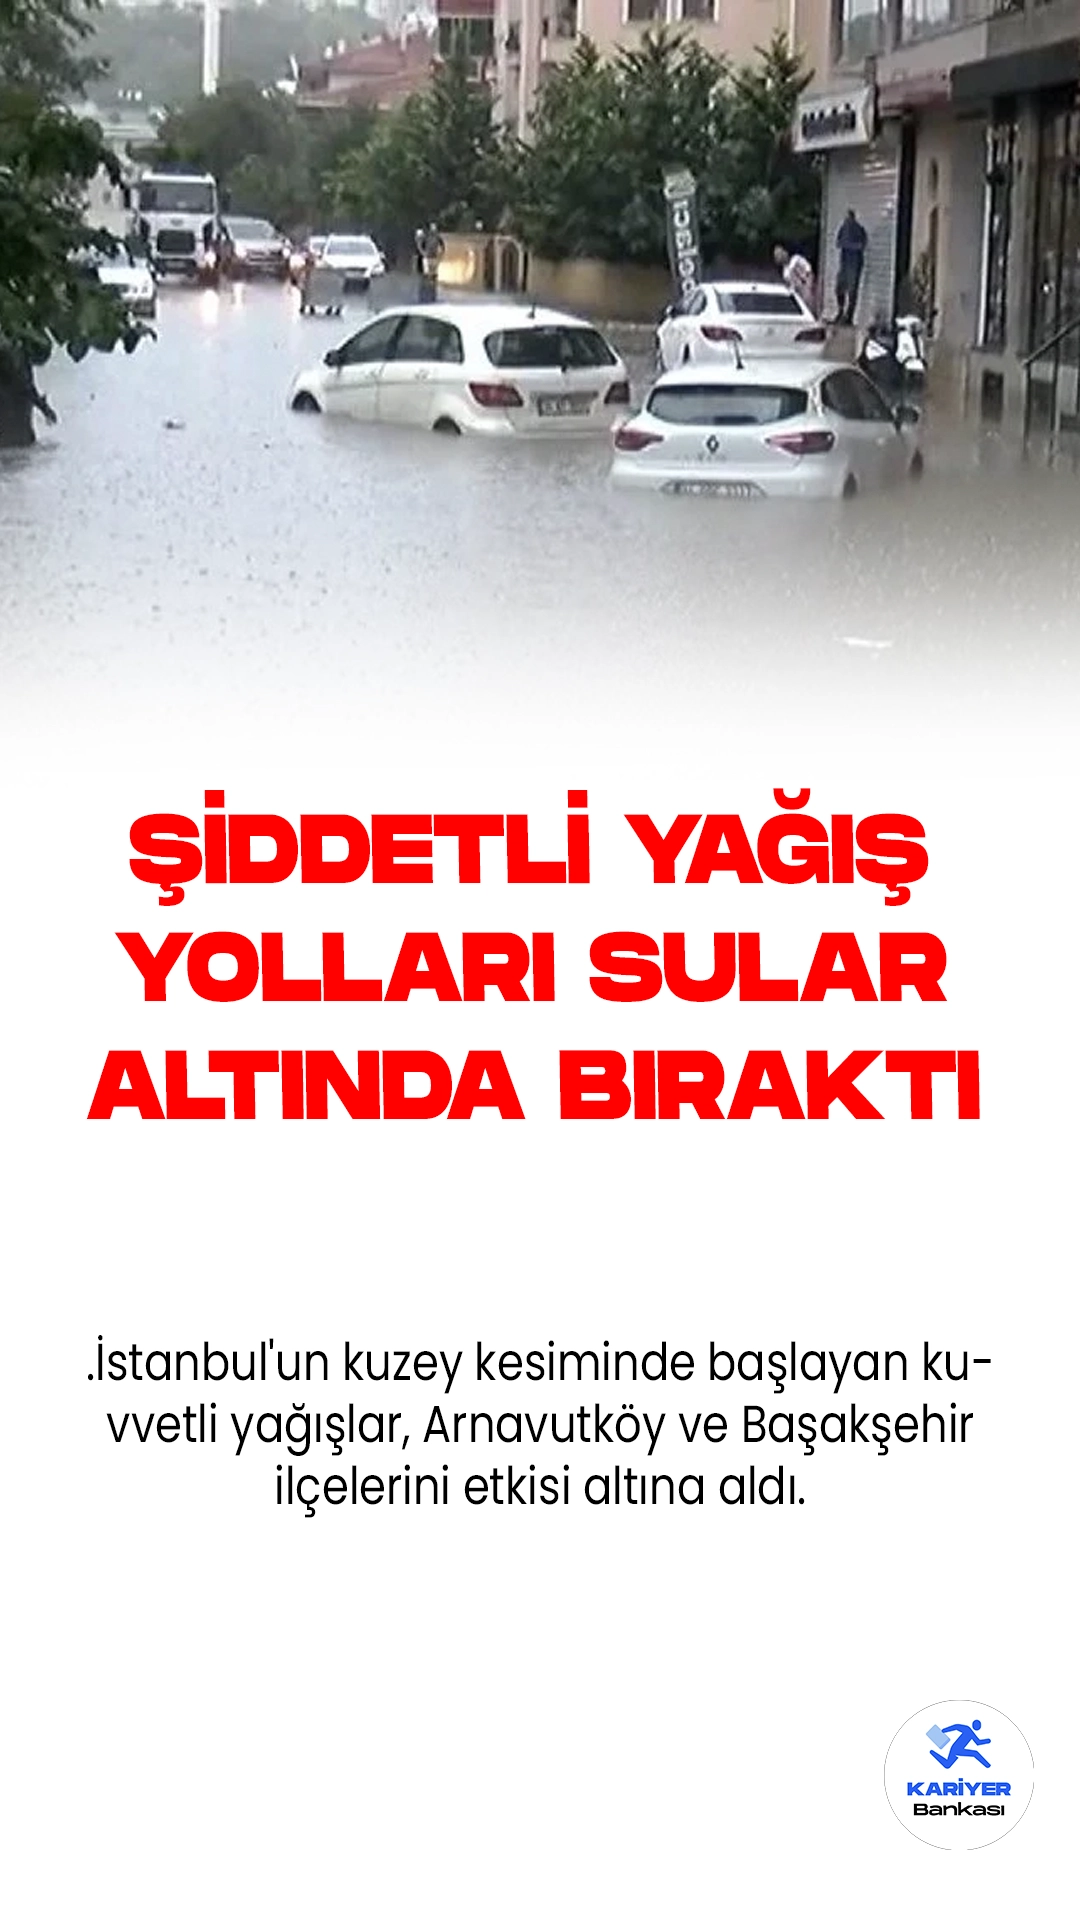 İstanbul'da Şiddetli Yağışlar Yolları Sular Altında Bıraktı.İstanbul'un kuzey kesiminde başlayan kuvvetli yağışlar, Arnavutköy ve Başakşehir ilçelerini etkisi altına aldı. Bu doğal afet nedeniyle yollar, göle döndü ve sürücüler ilerlemekte büyük zorluklar yaşadılar.